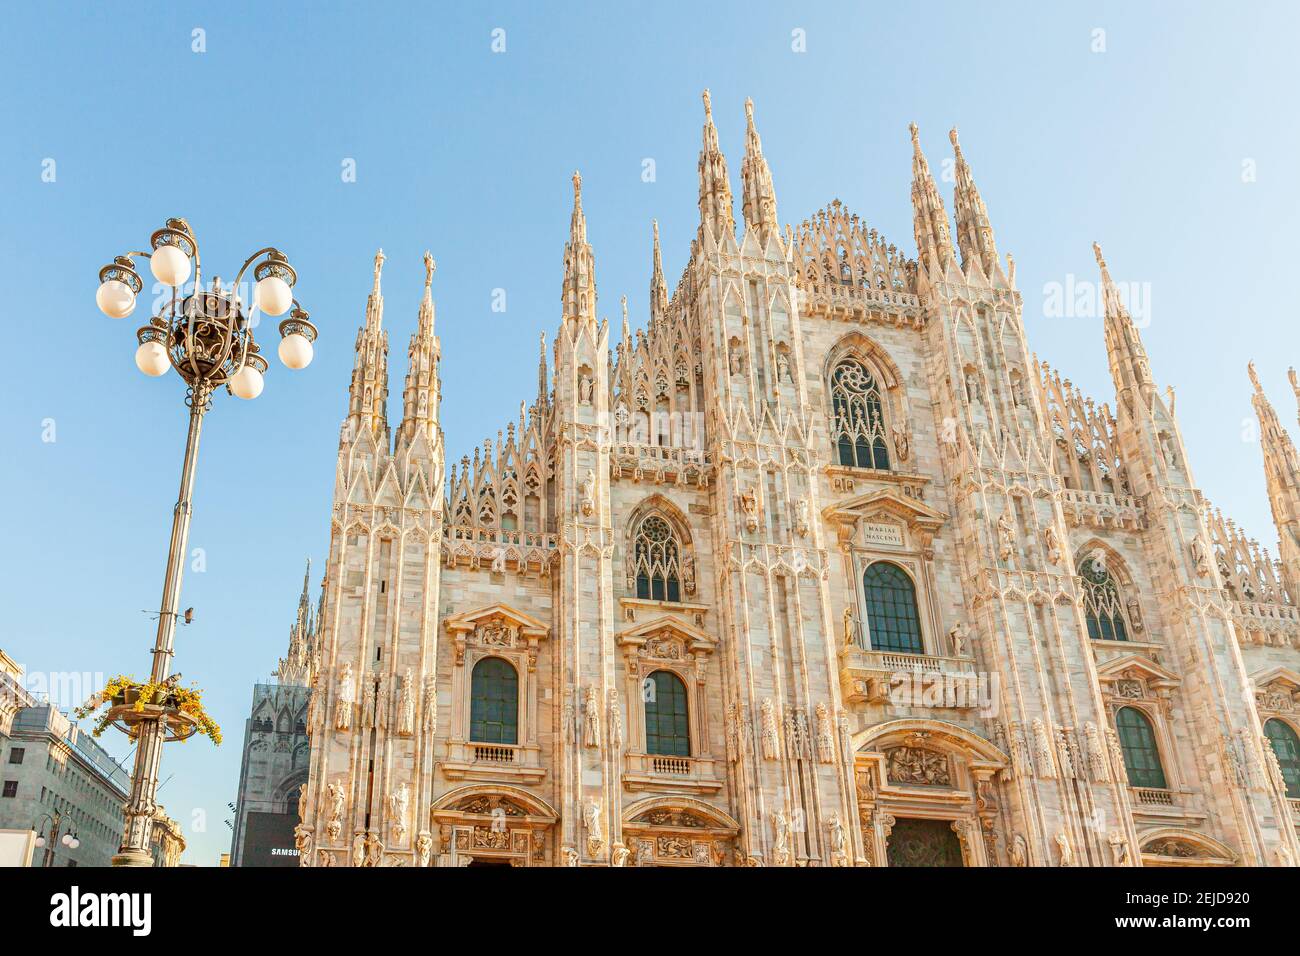 Berühmte Kirche Mailänder Dom Duomo di Milano mit gotischen Türmen und weißen Marmorstatuen. Top Touristenattraktion auf der piazza in Mailand Lombardia Italien W Stockfoto